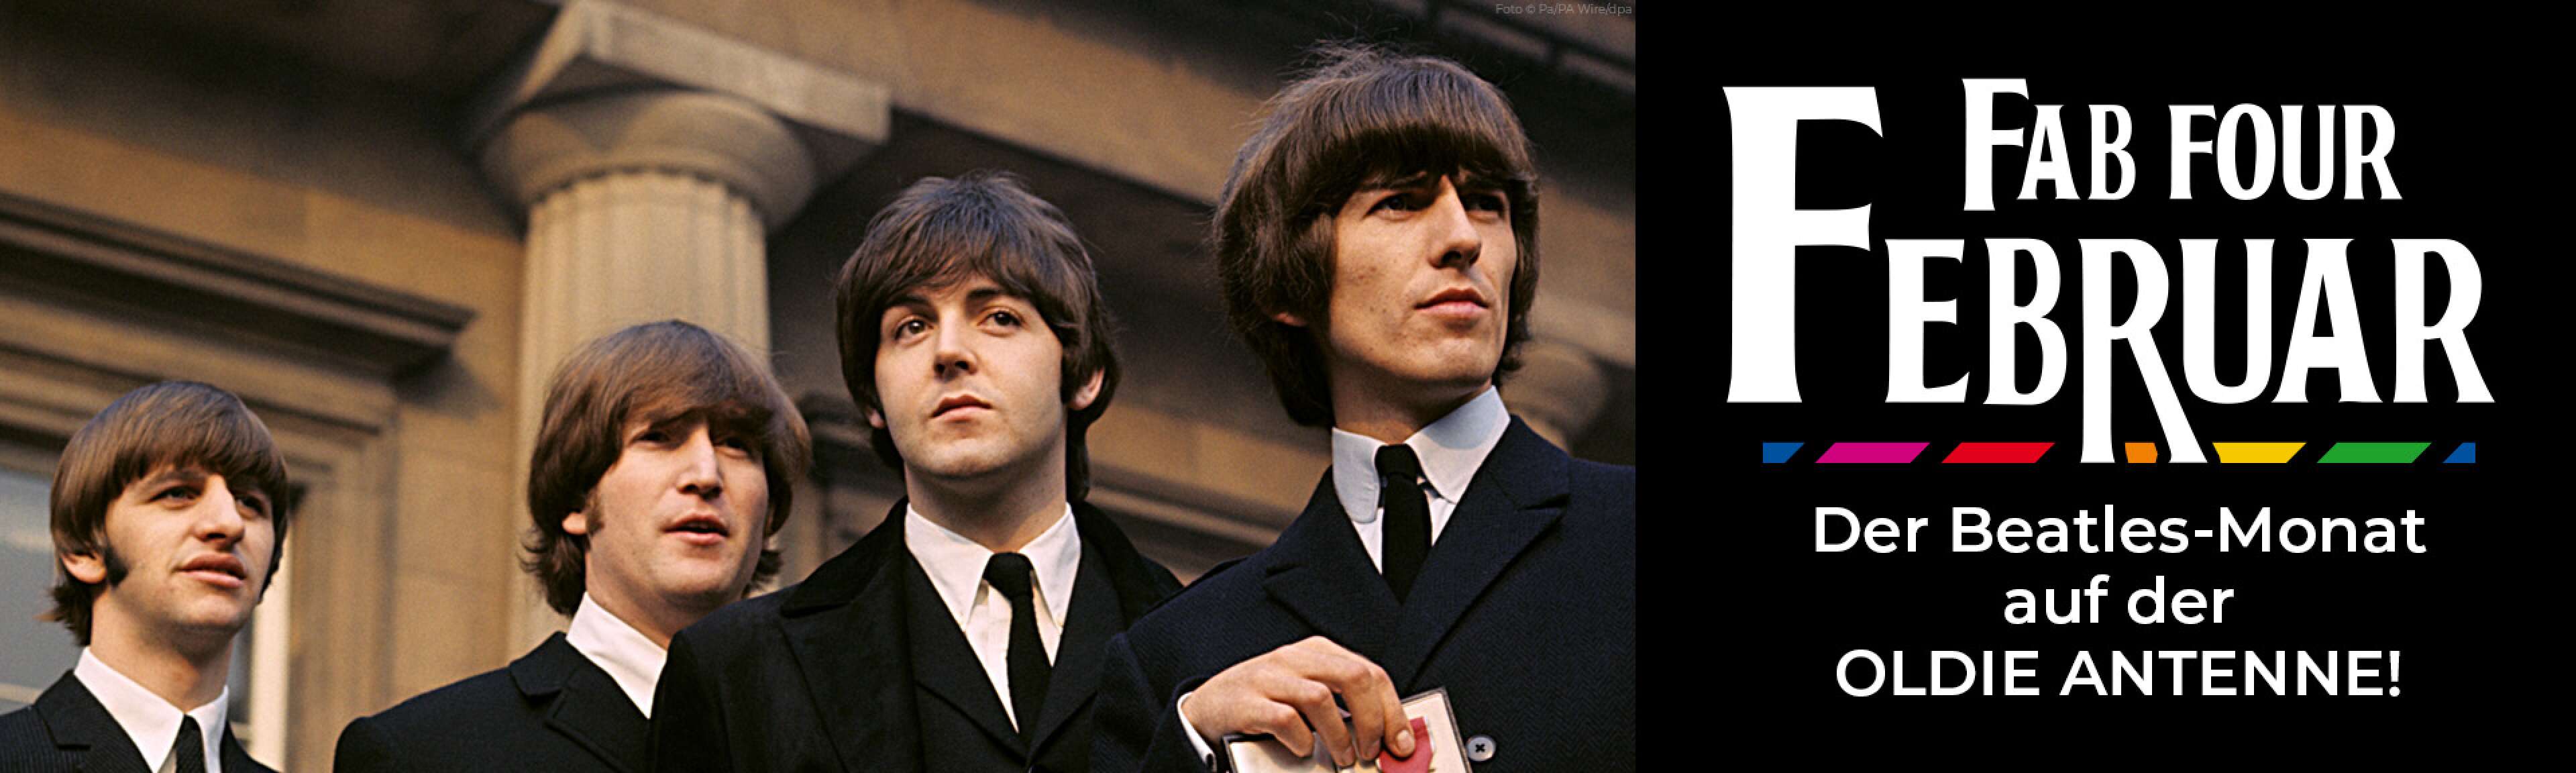 Fab Four Februar - der Beatles Monat auf der OLDIE ANTENNE